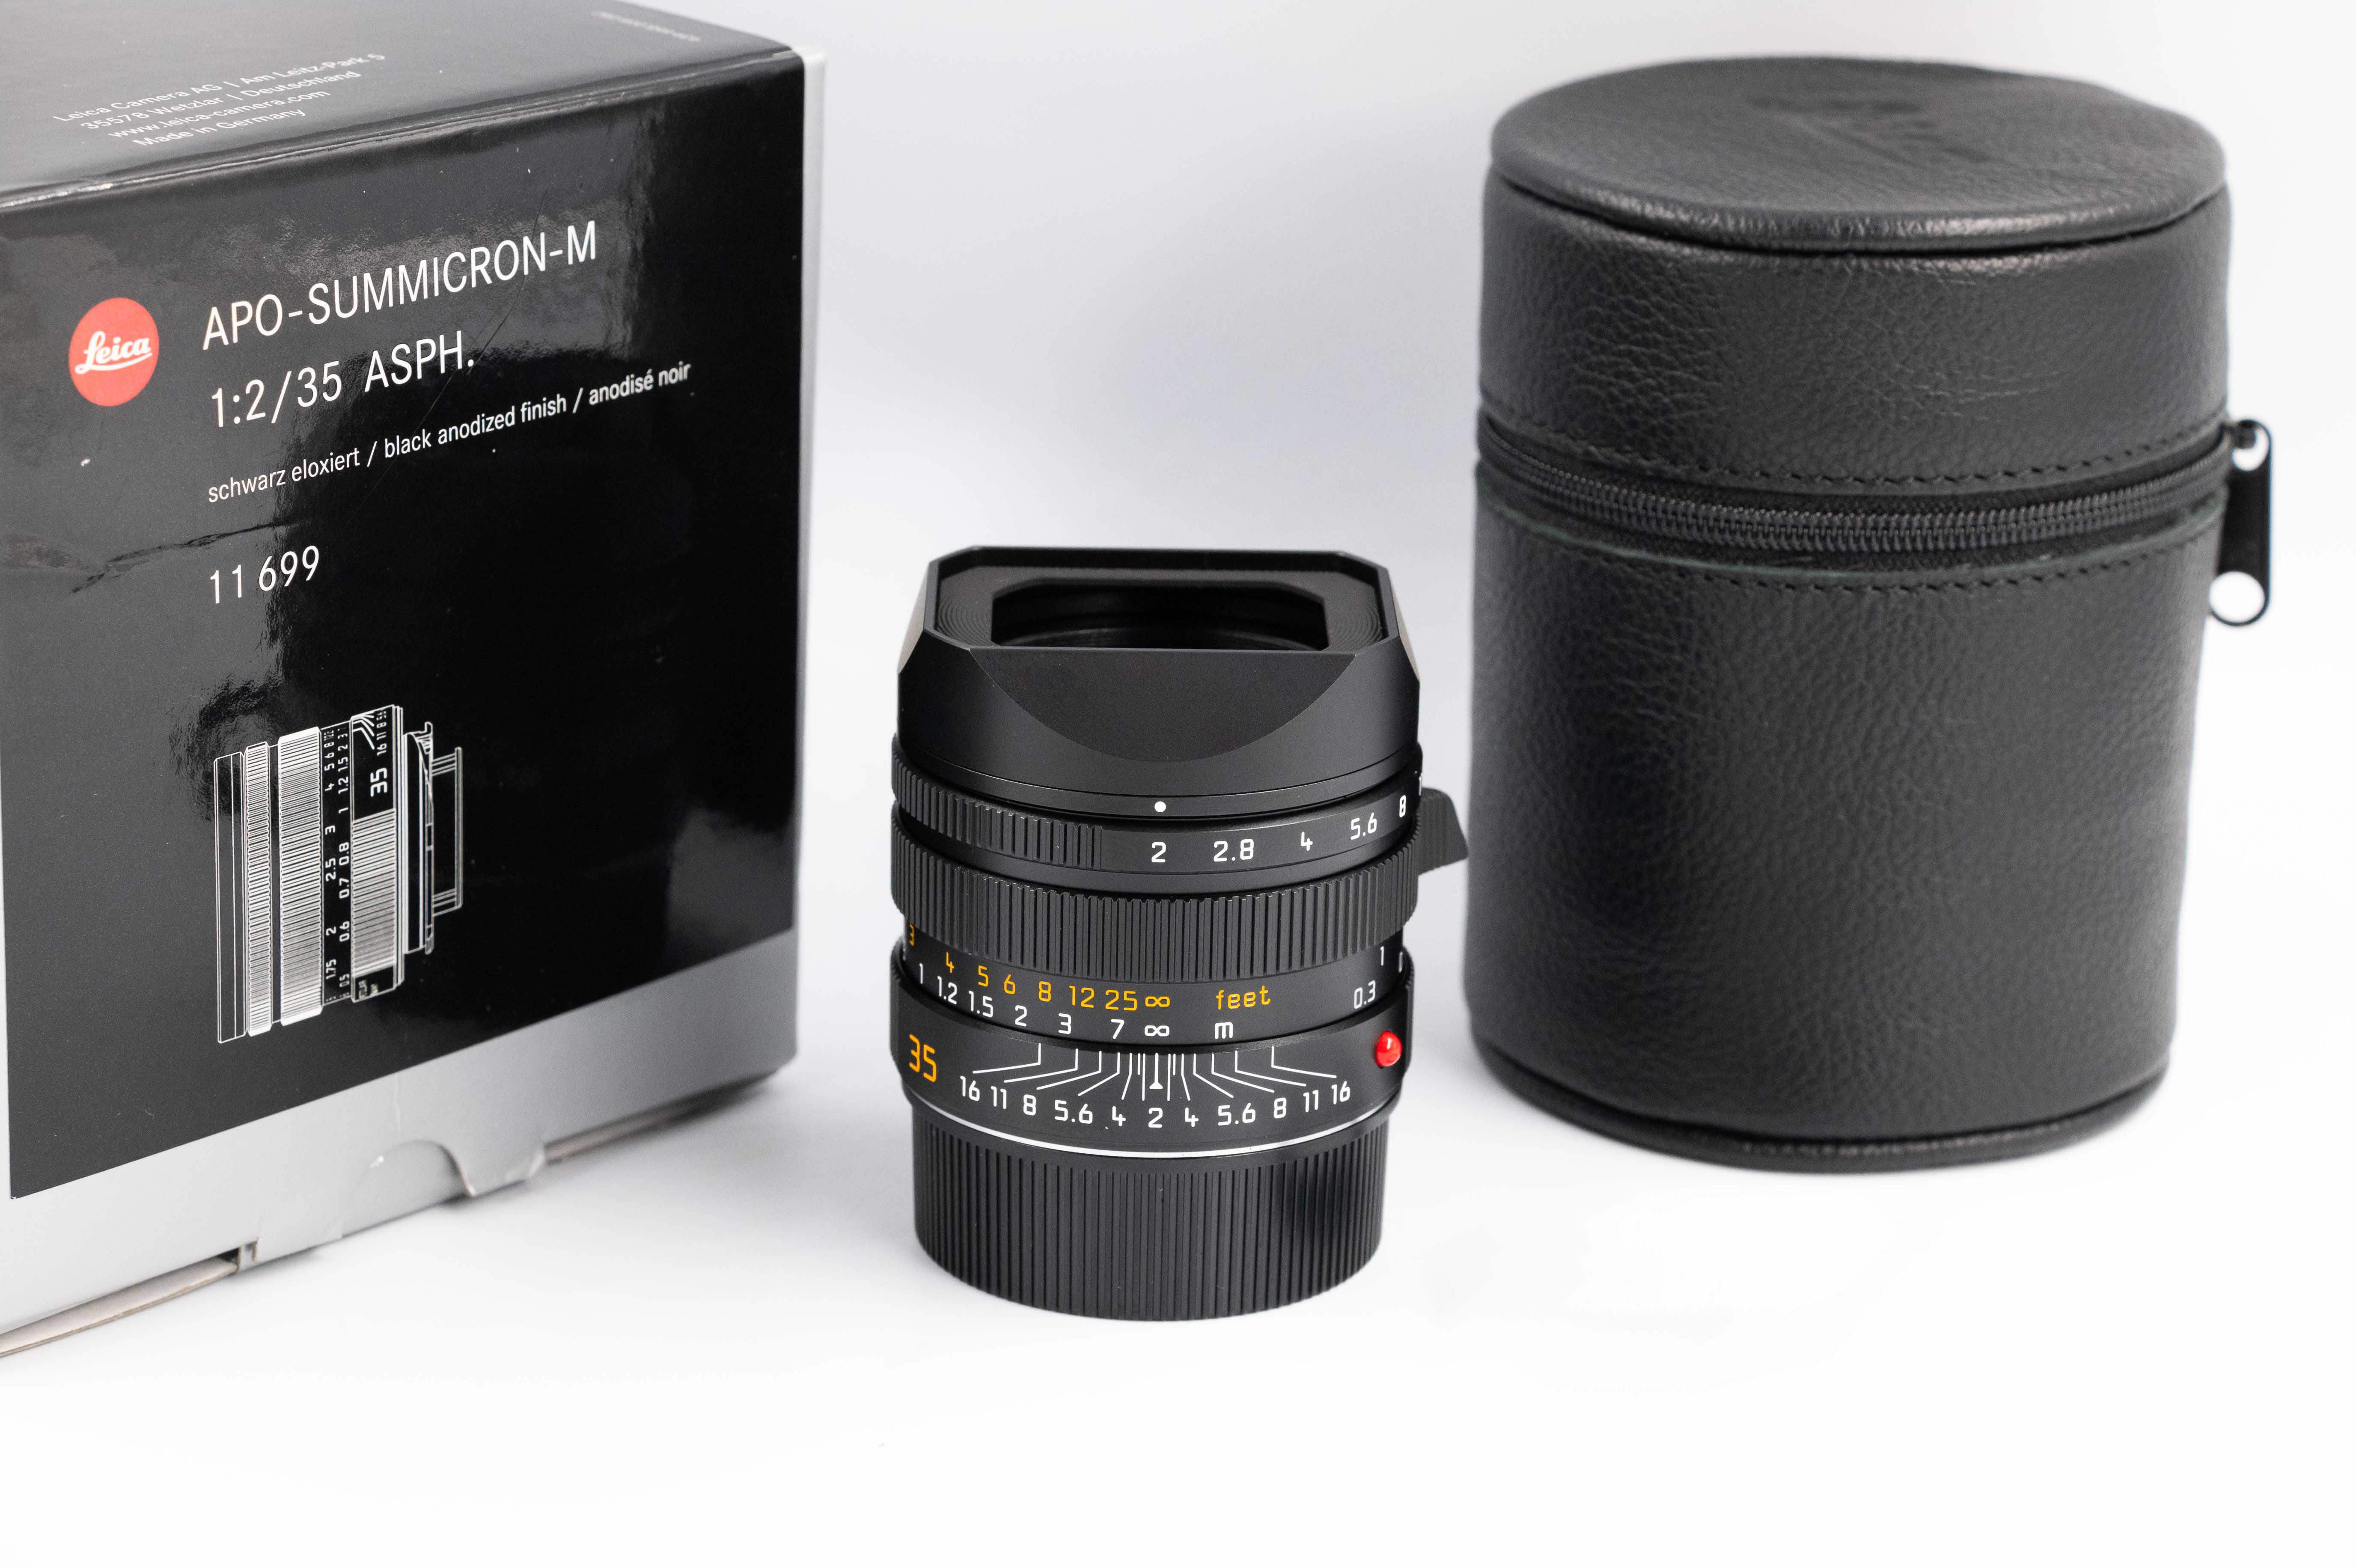 Leica APO-Summicron-M 35mm f/2 ASPH - with full warranty